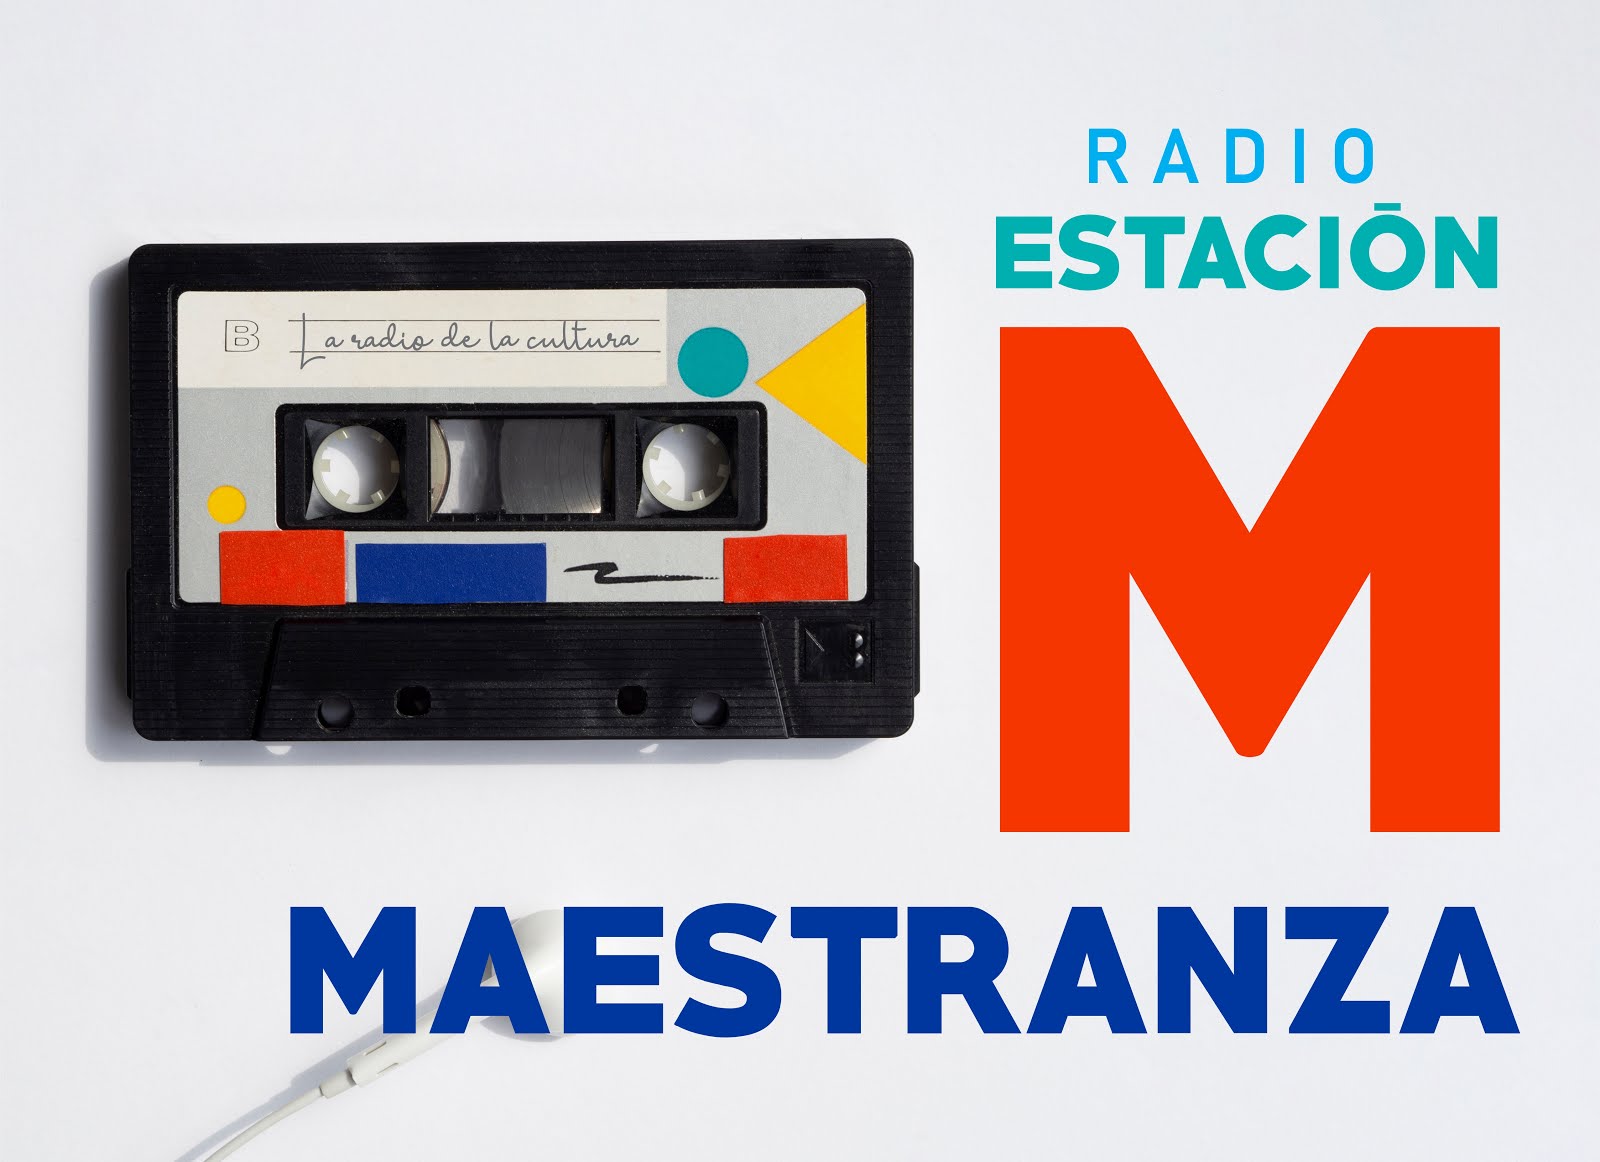 RADIO ESTACIÓN MAESTRANZA